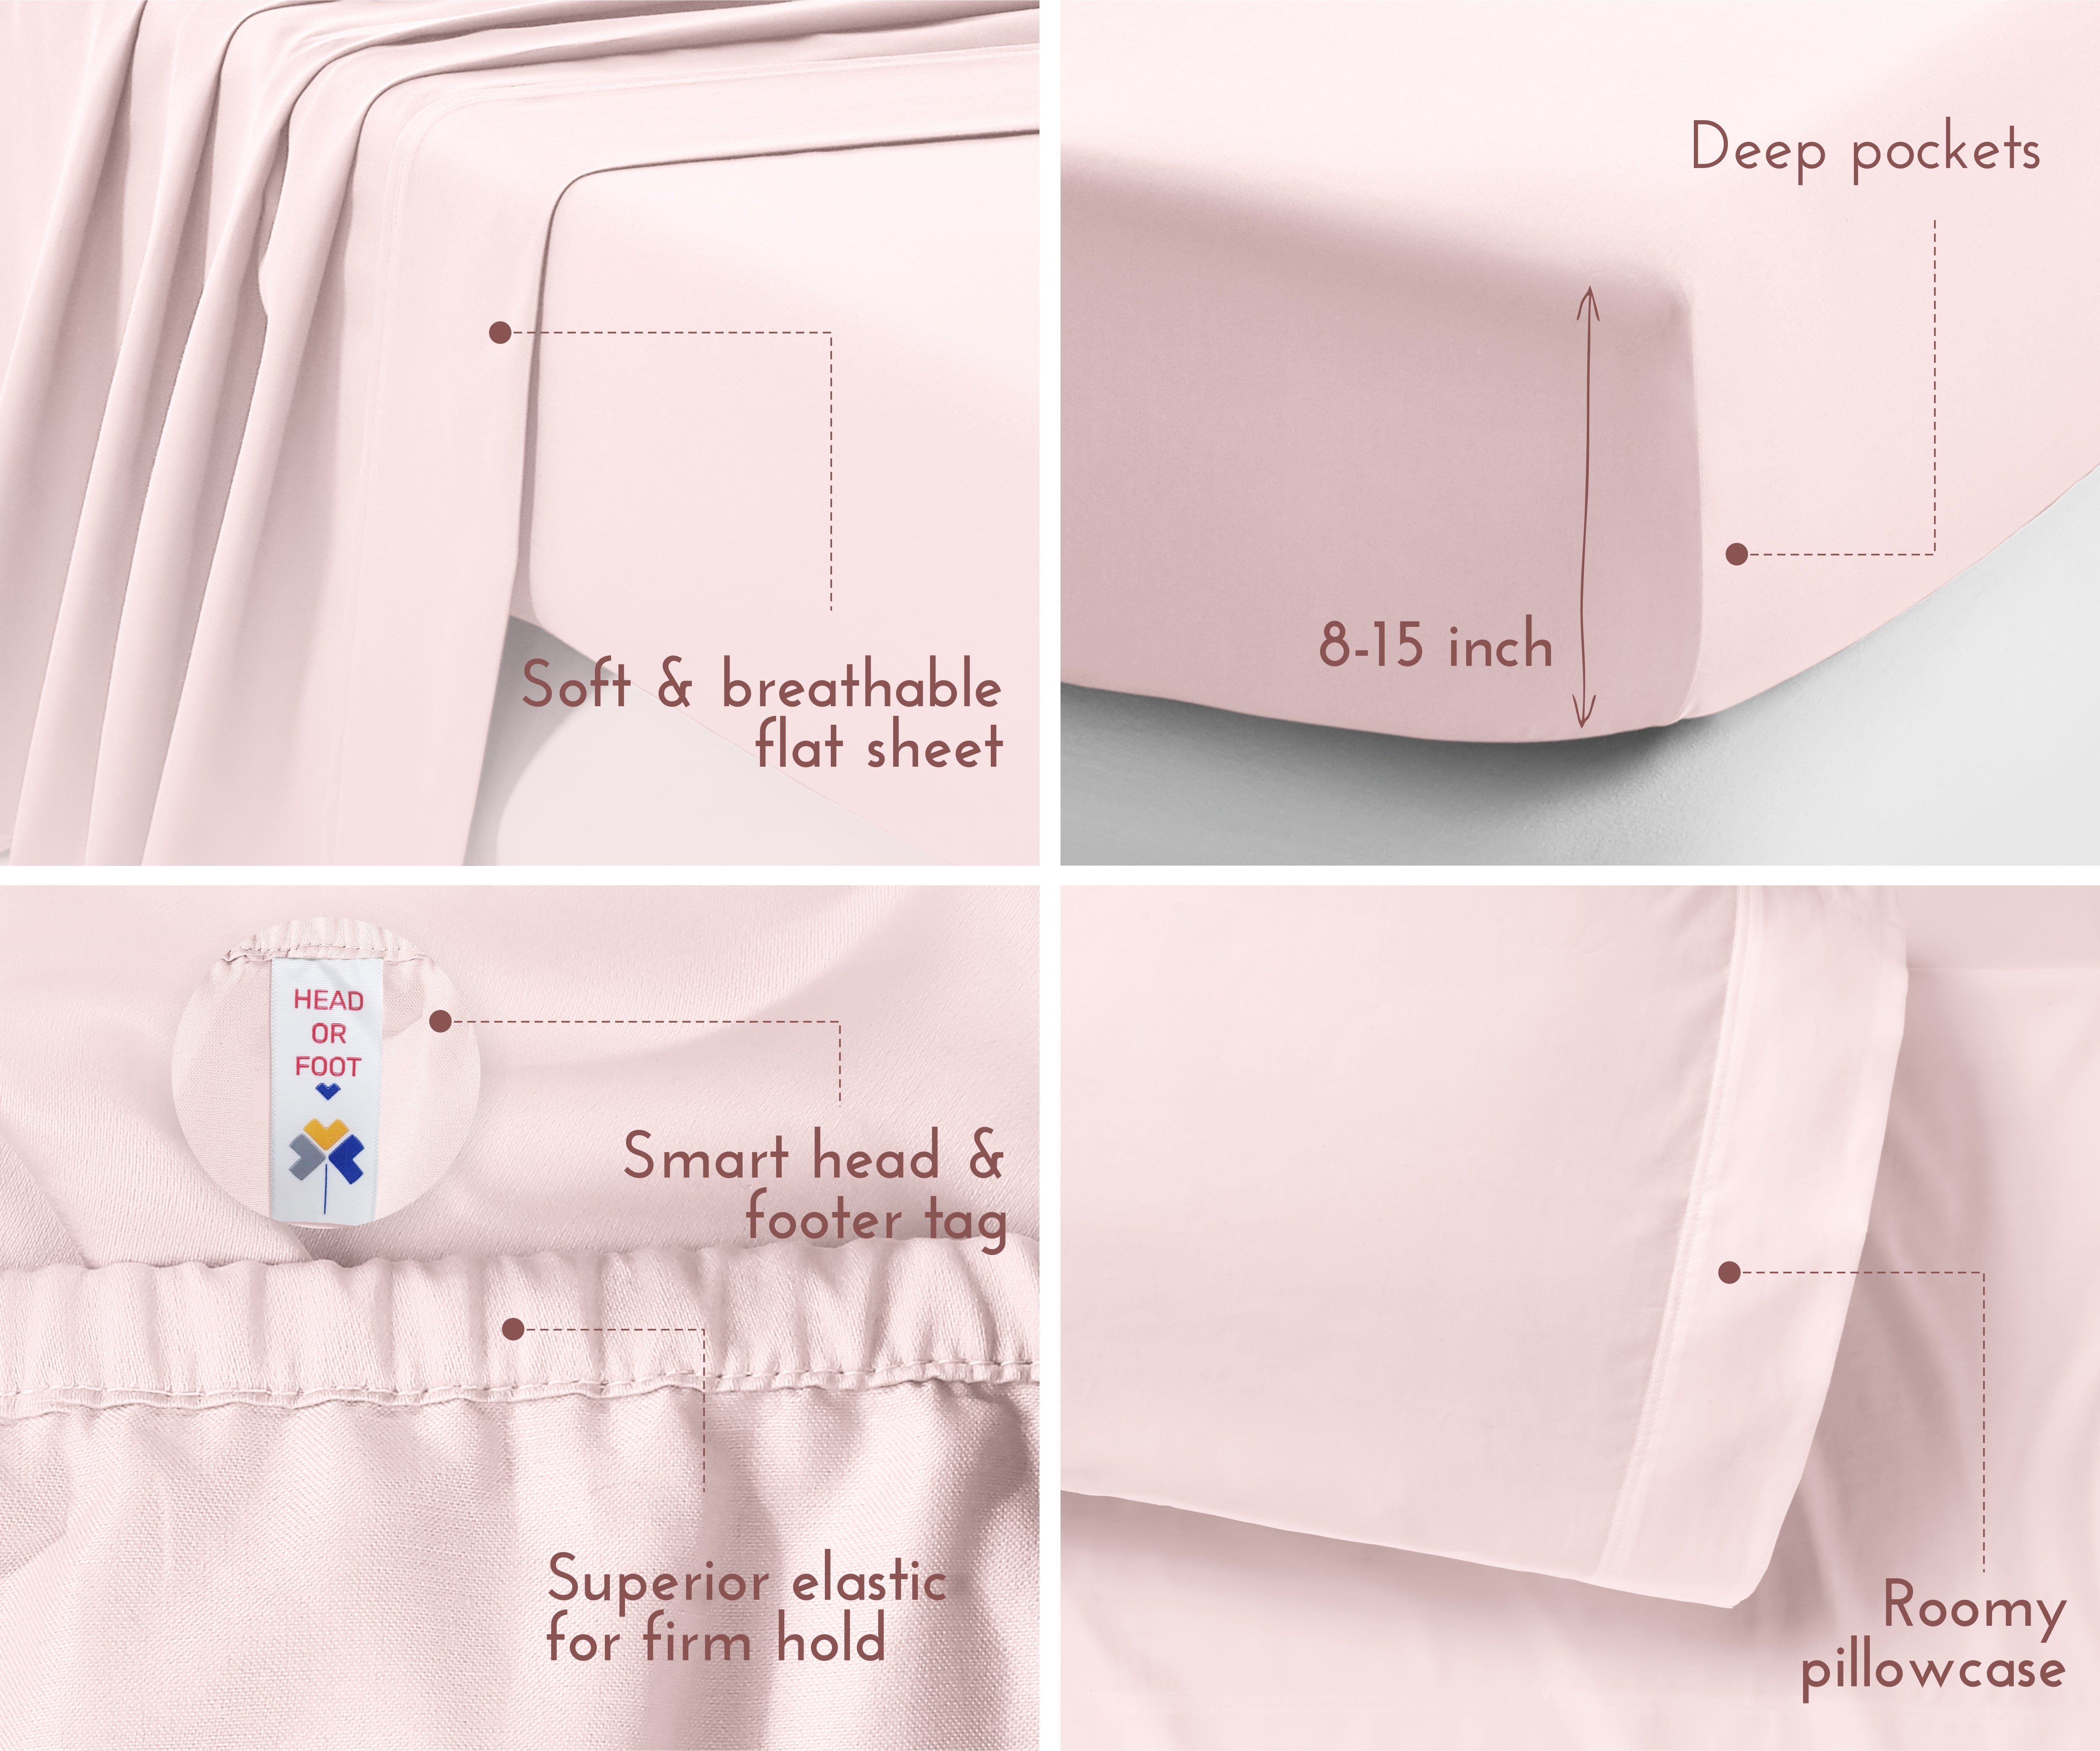 Silky Soft Sateen Solid Sheet Set - California Design Den